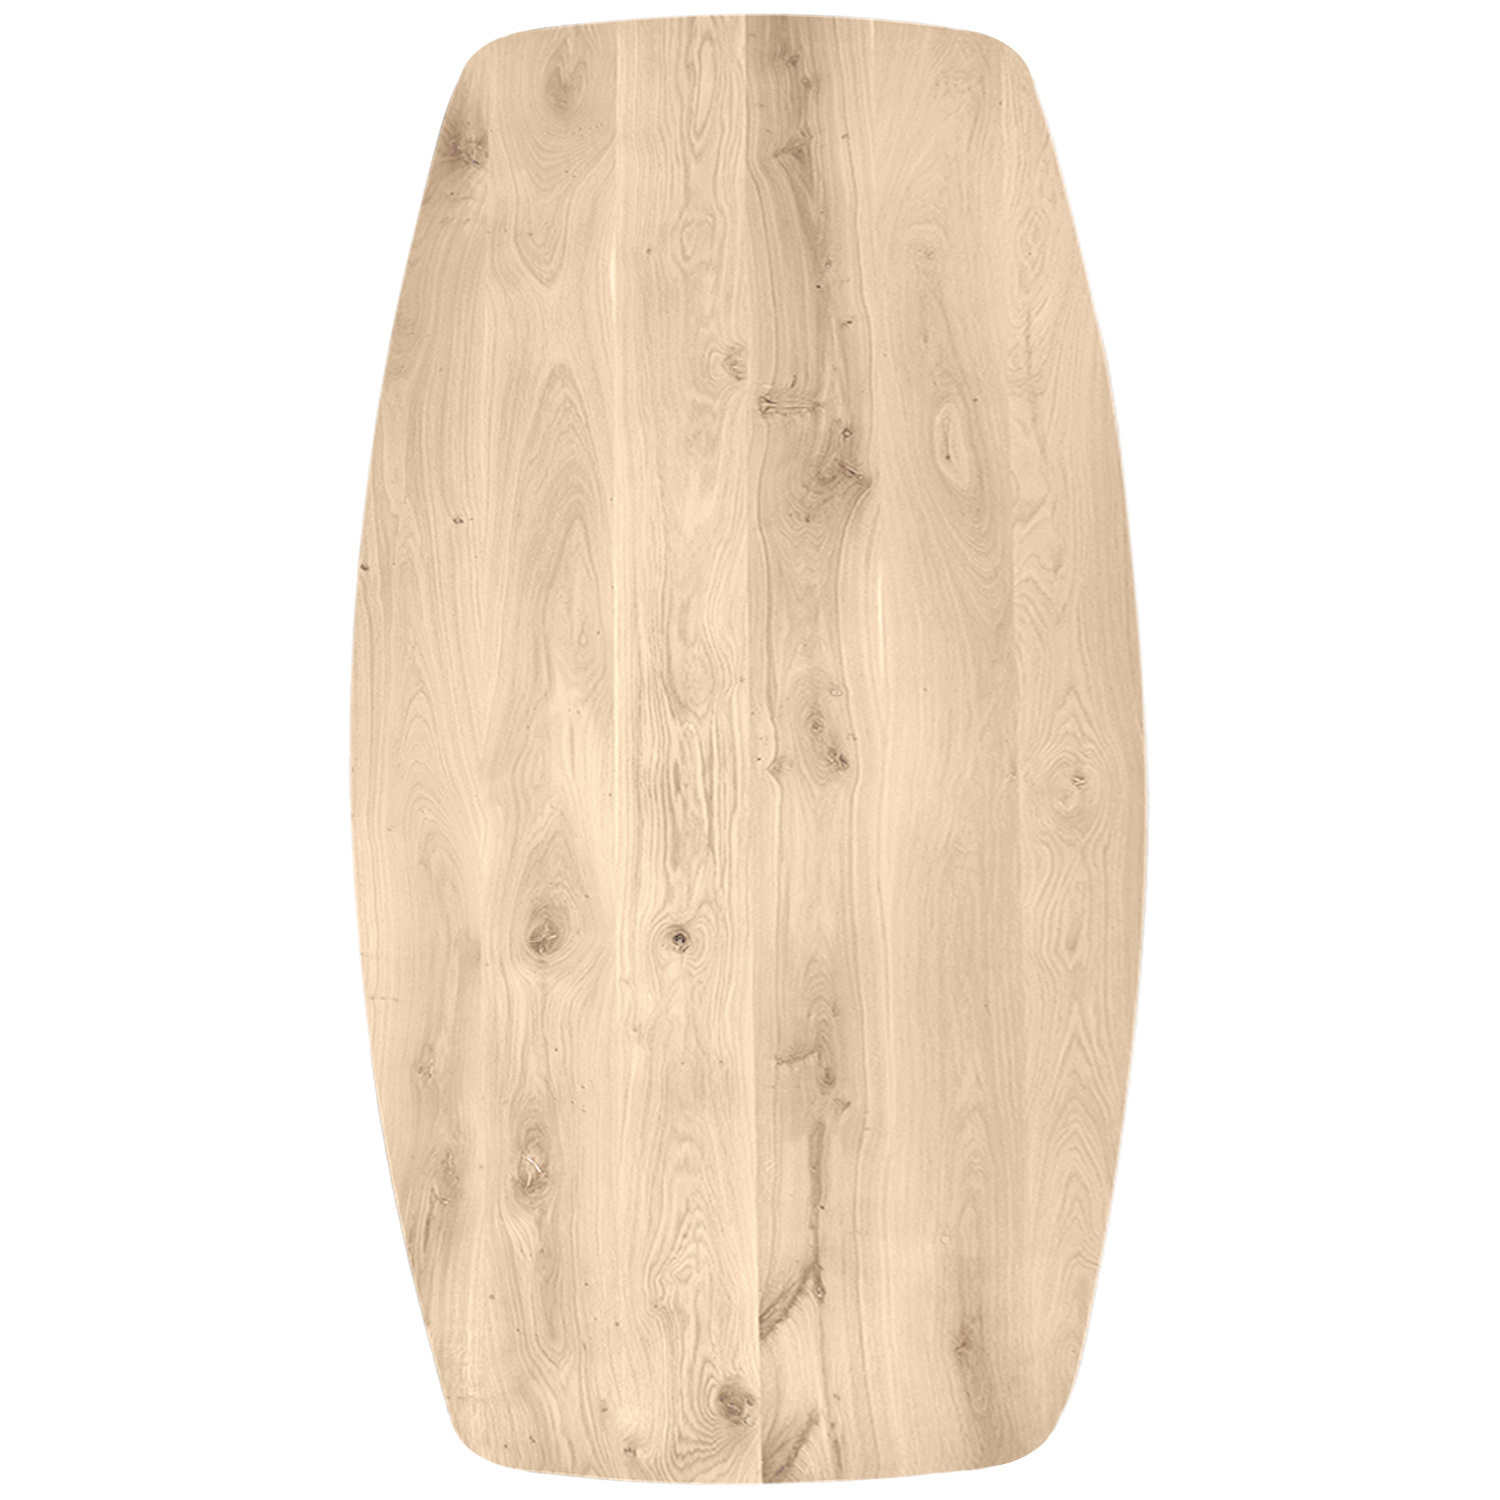  Deens ovaal eiken tafelblad - 2,7 cm dik (1-laag) - Diverse afmetingen - rustiek Europees eikenhout - met brede lamellen (circa 10-12 cm) - verlijmd kd 8-12%